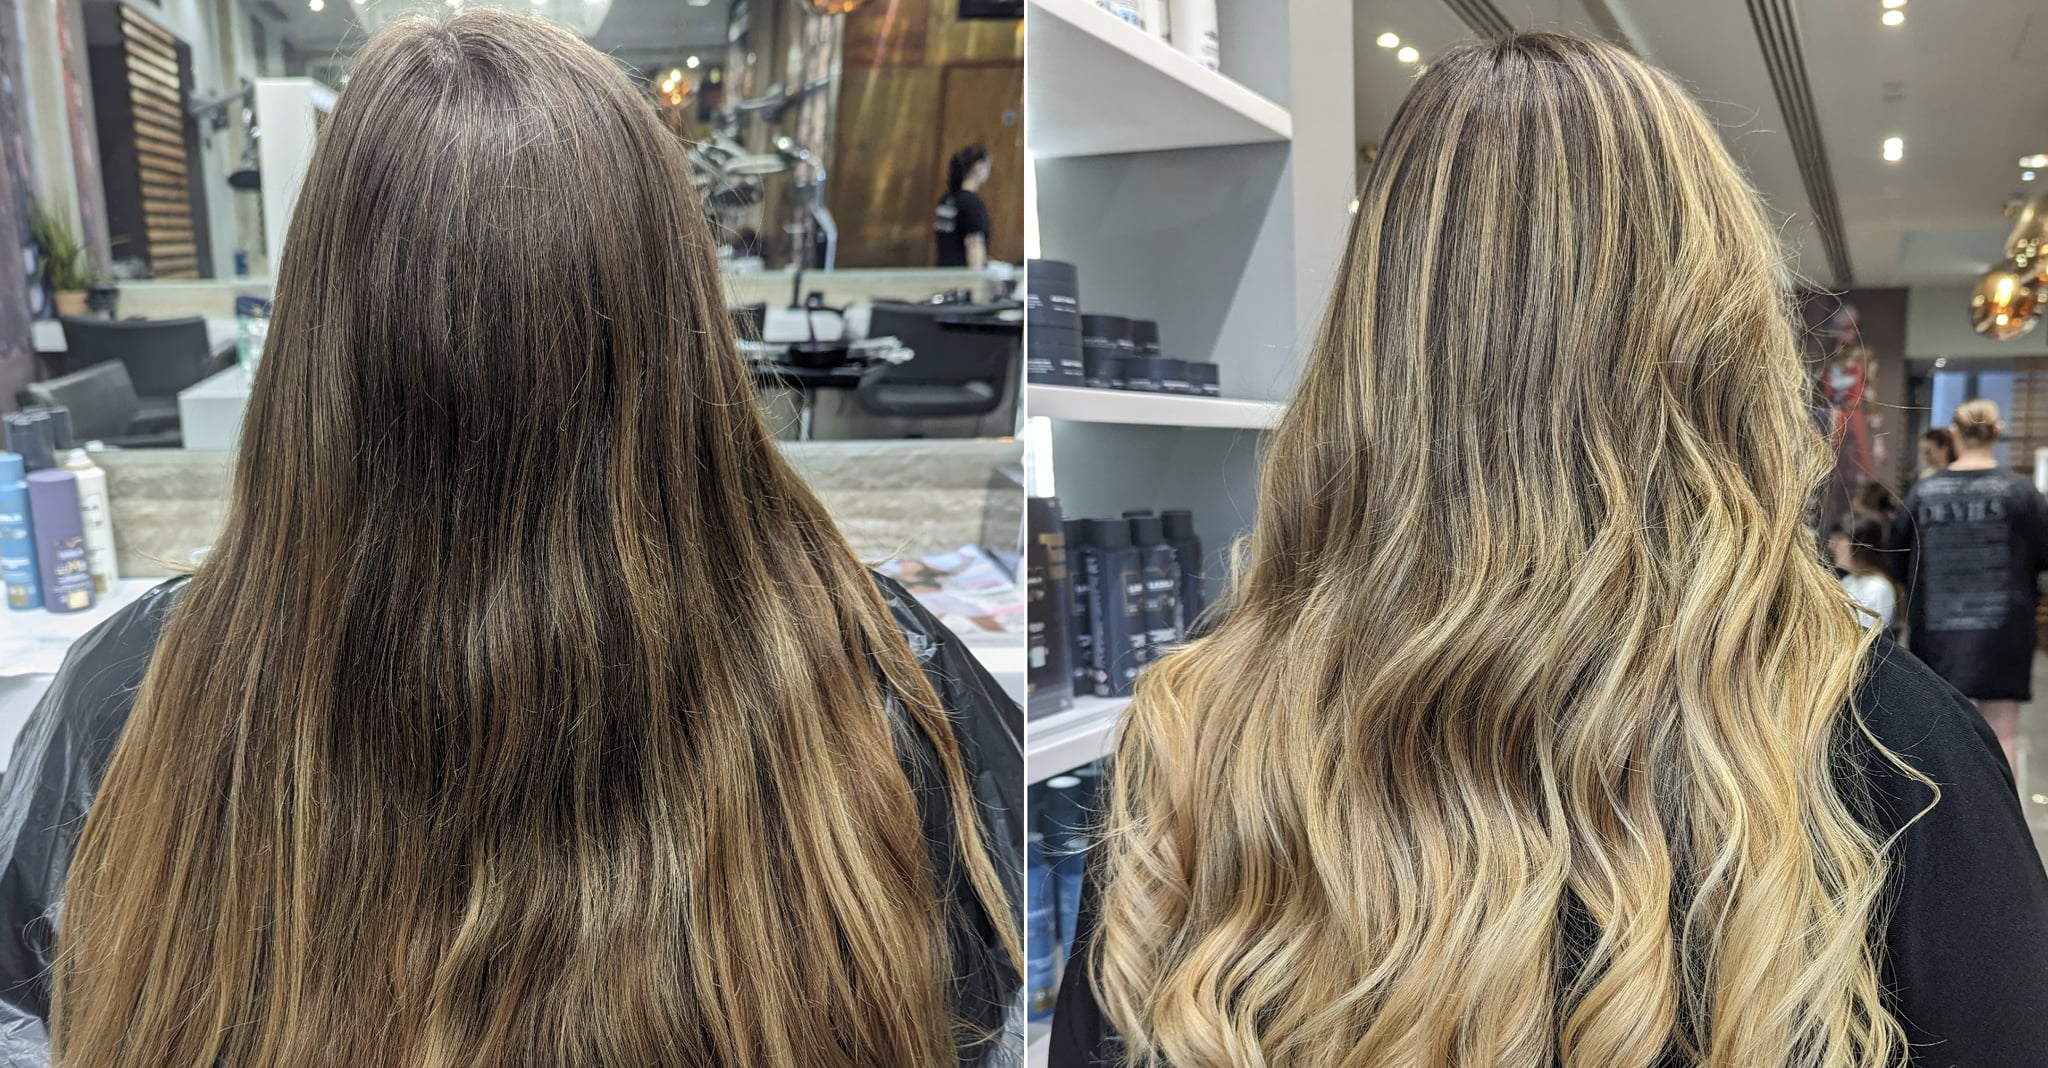 Foto de antes y después del color de cabello rubio de Dream Girl.